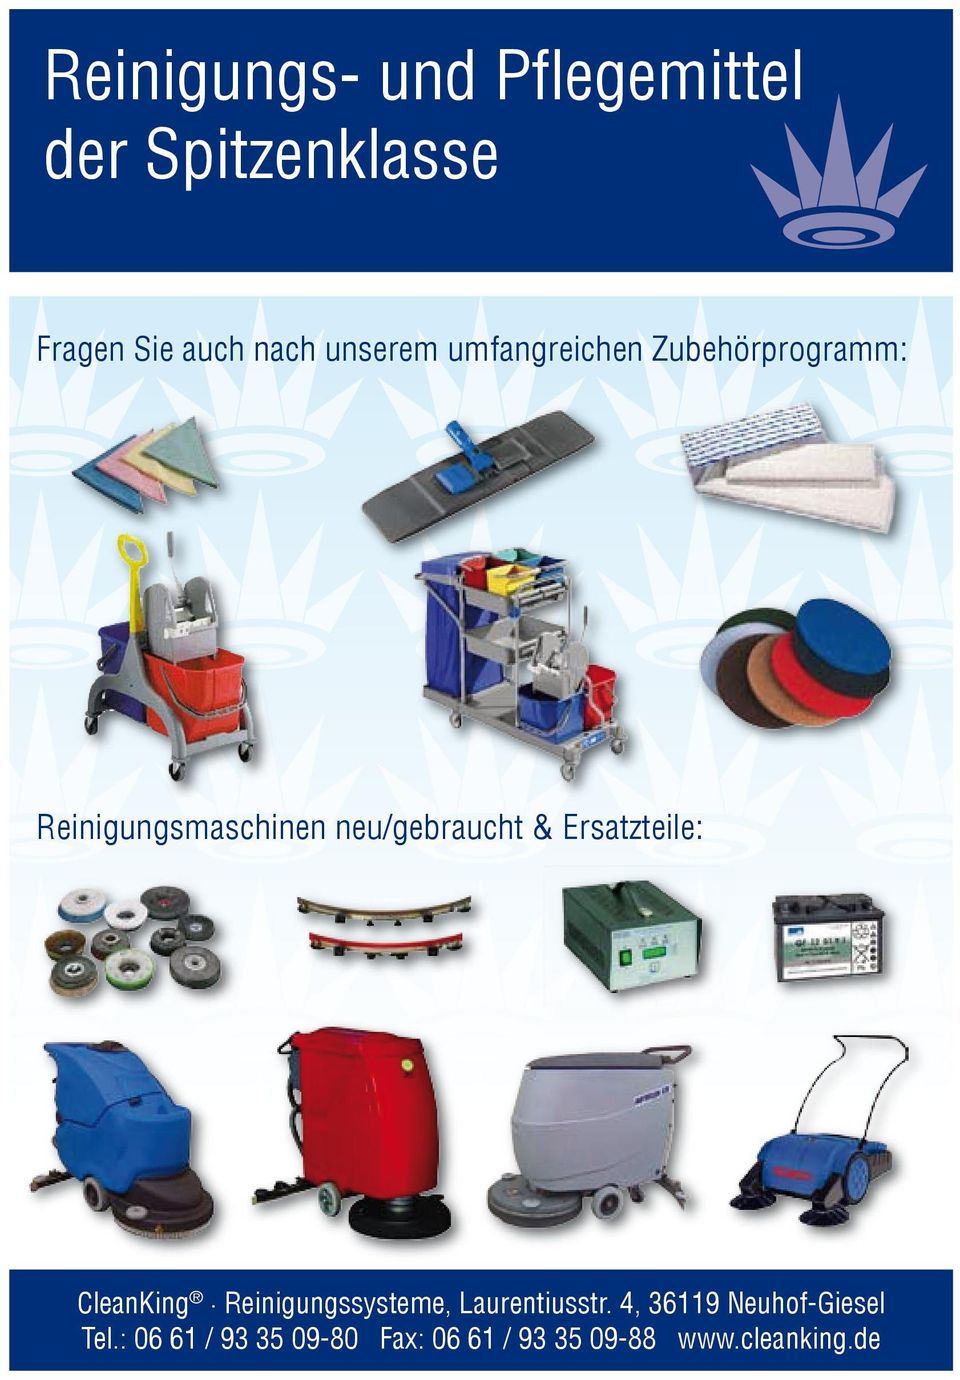 & Ersatzteile: CleanKing Reinigungssysteme, Laurentiusstr.